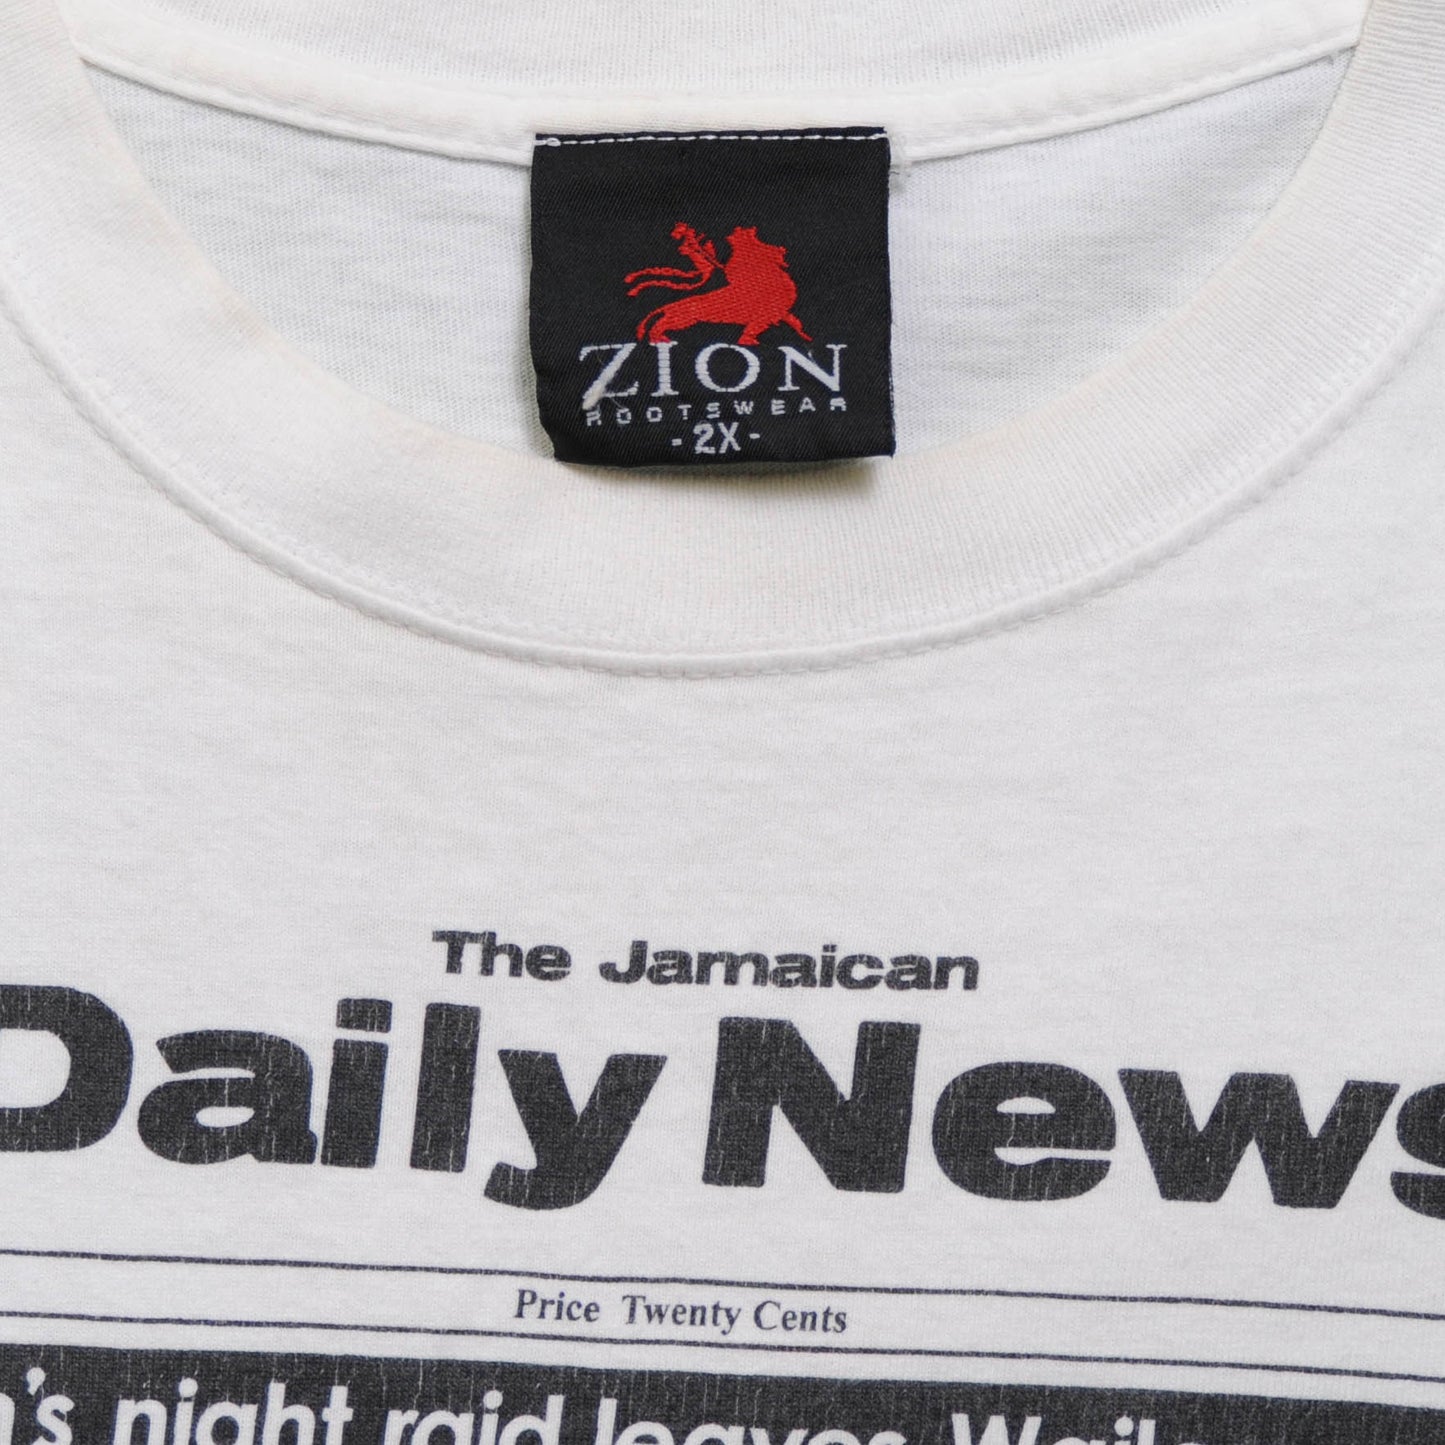 Bob Marley The Jamaican DailyNews"MARLEY SHOT"Tシャツ　白(XXL)/A2729T